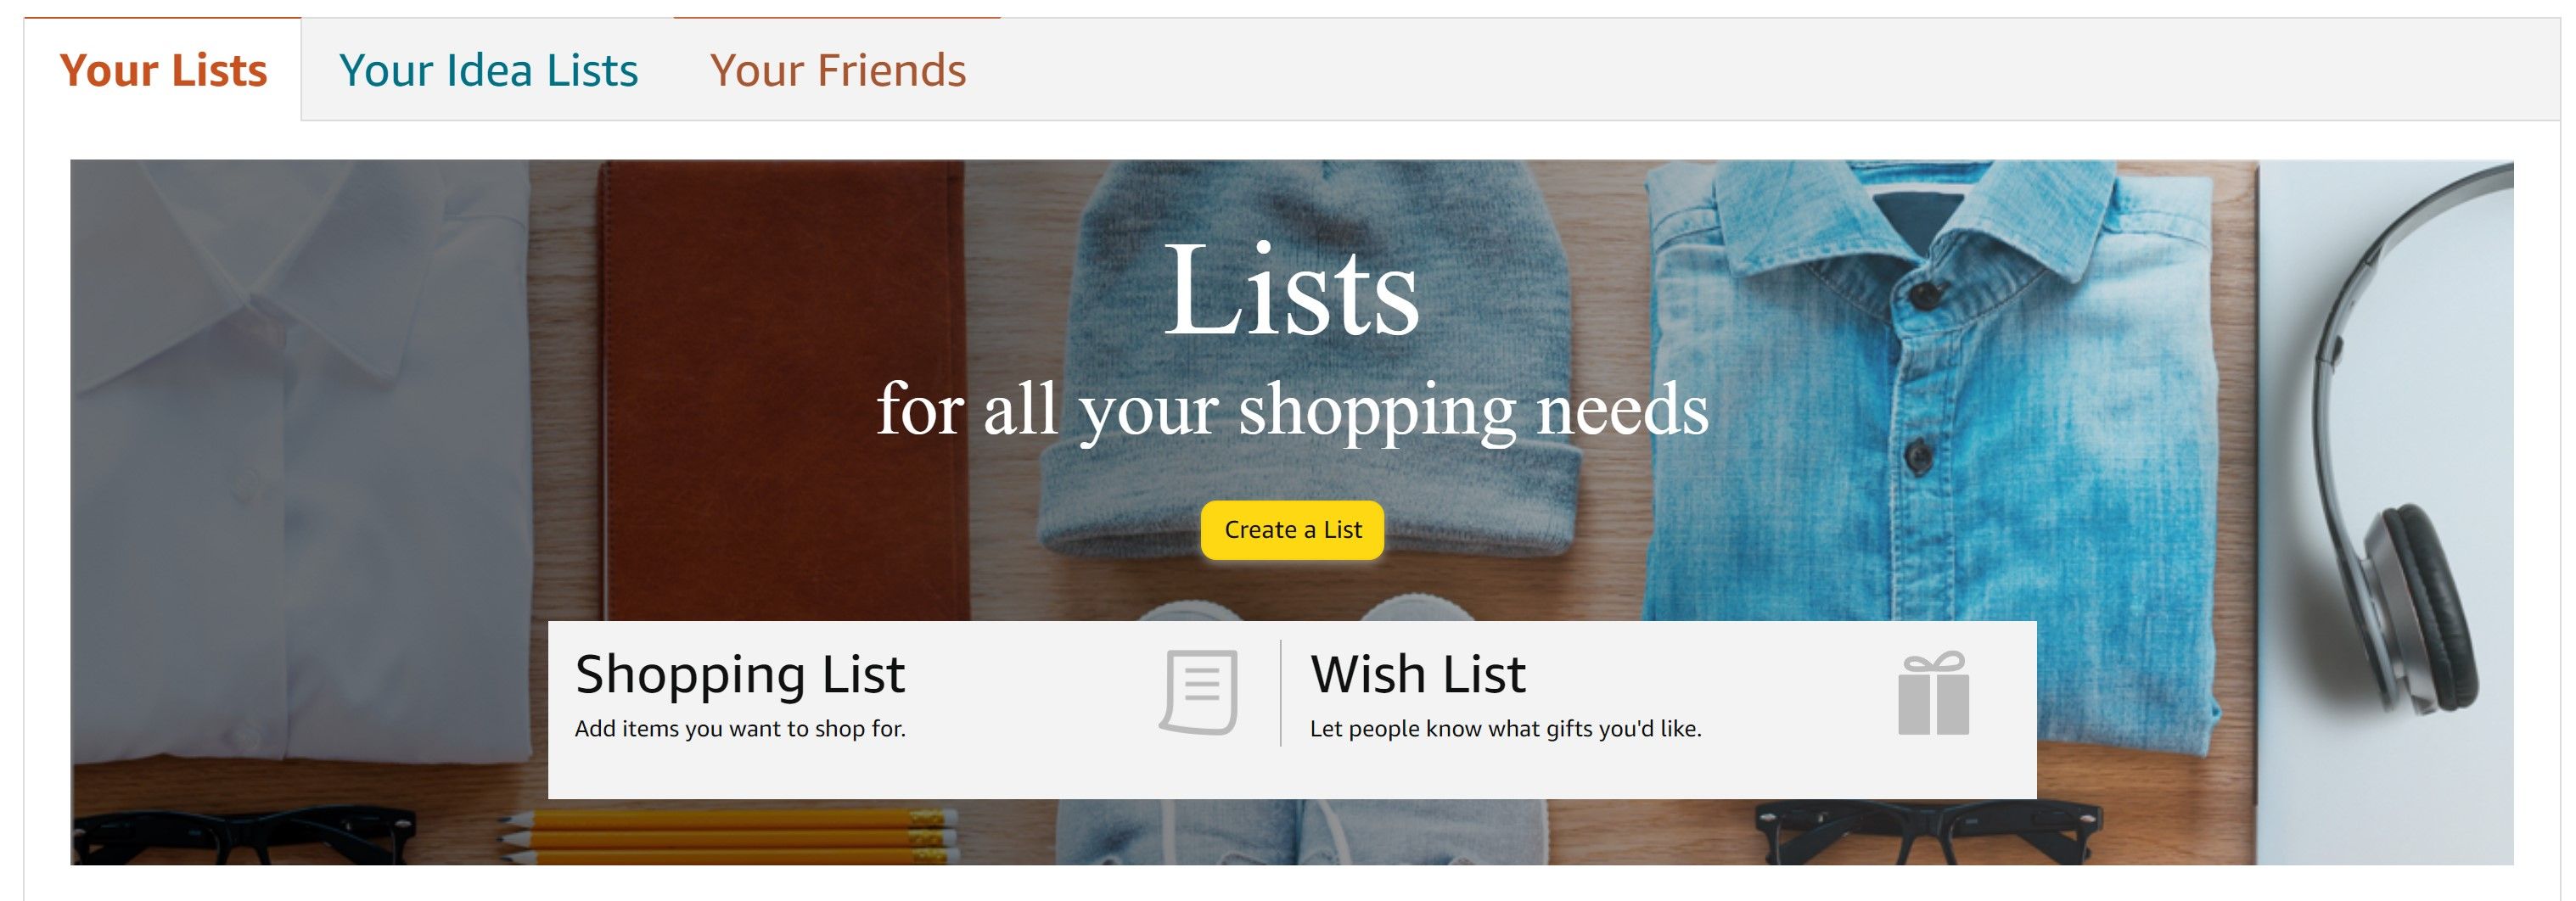 site de compras da Amazon mostrando opções de criação de lista